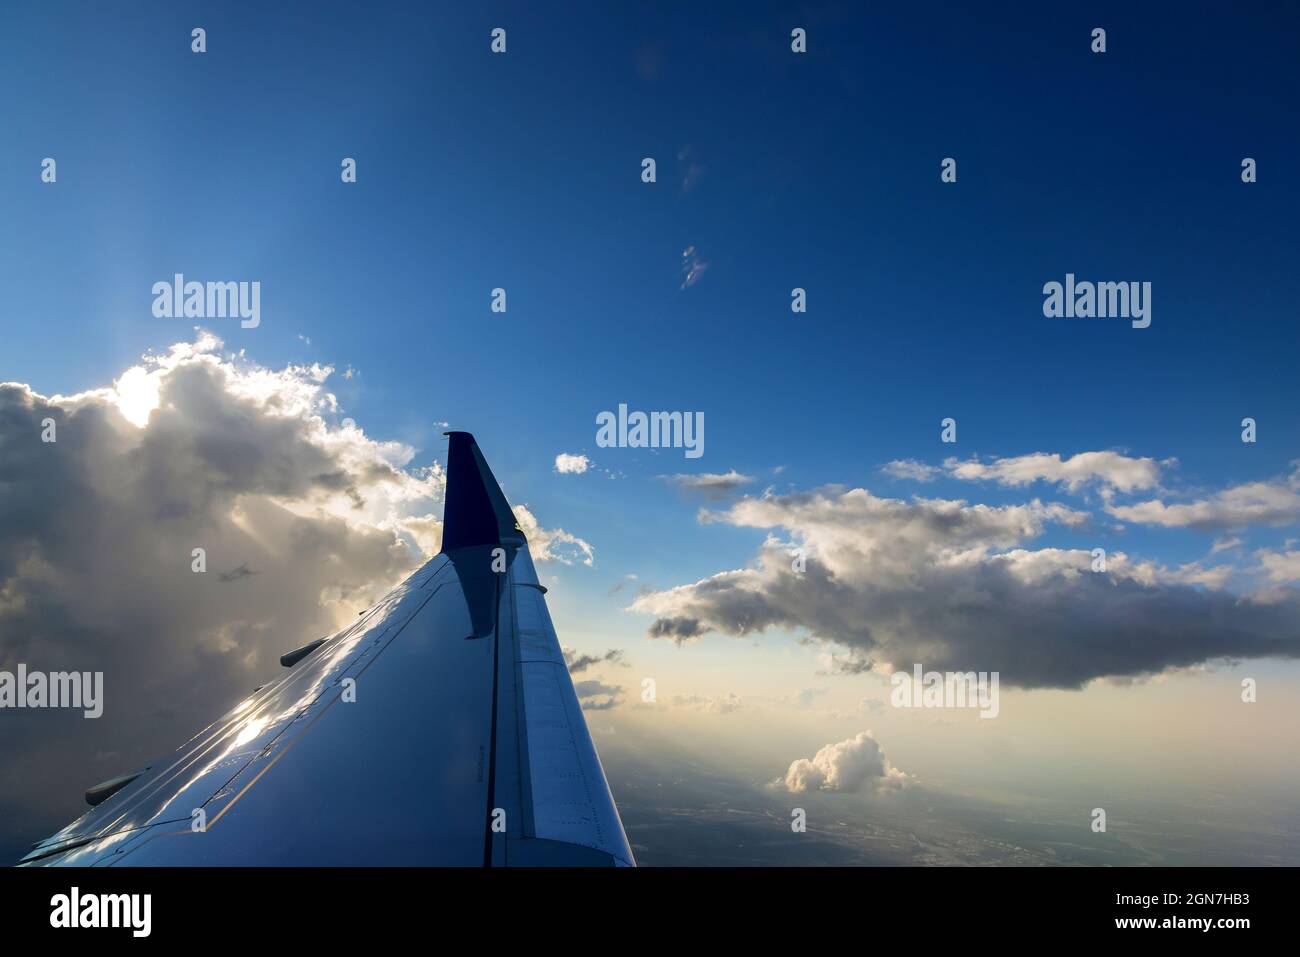 Vista del ala del avión durante una hermosa y colorida puesta de sol nublada Foto de stock